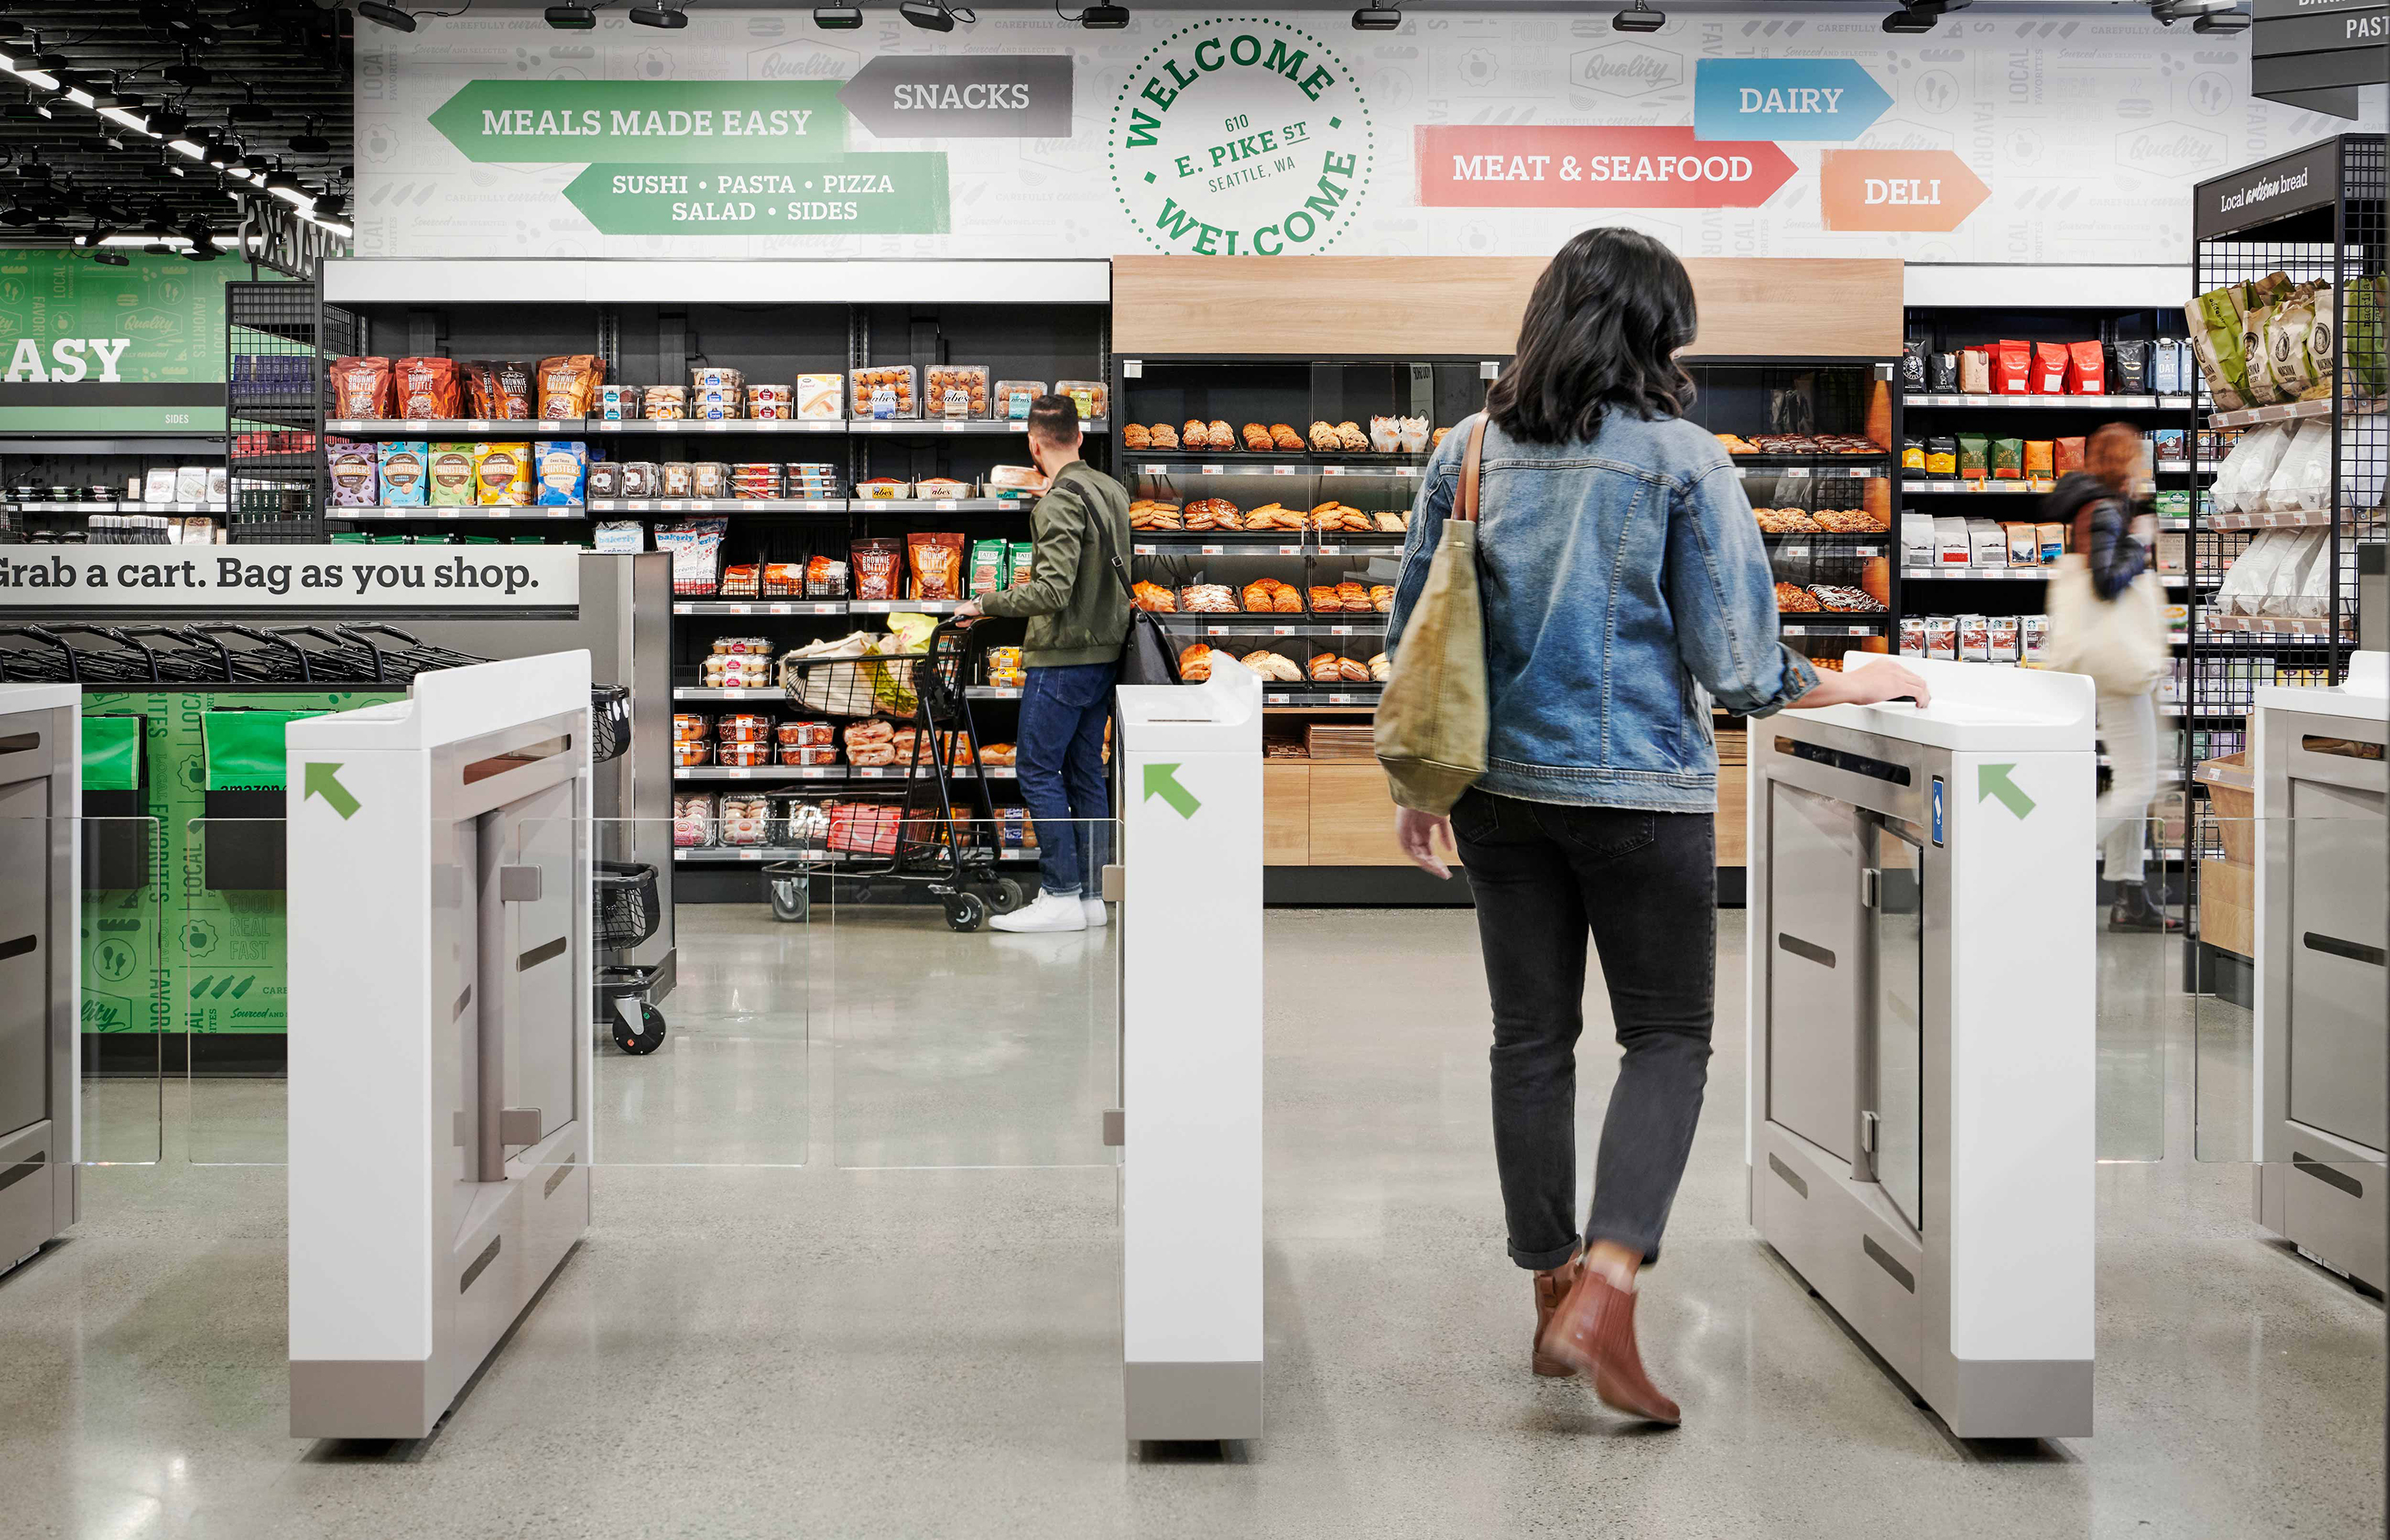 Amazon Go abre supermercado sin cajeros - CNN Video